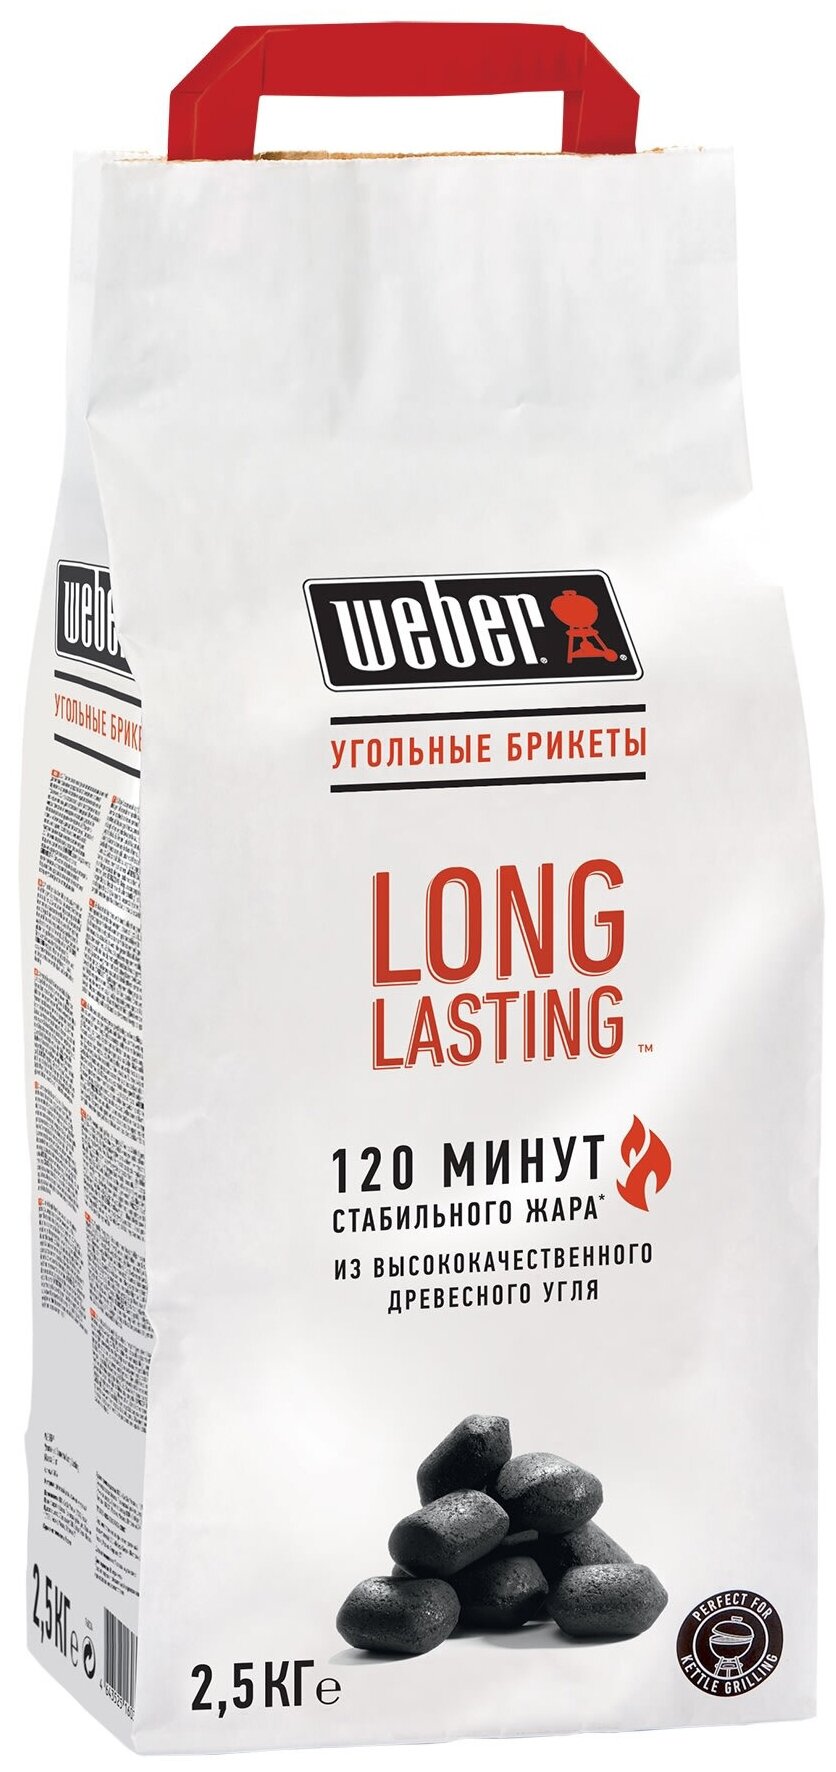 Weber угольные брикеты премиум long lasting, 2,5 кг